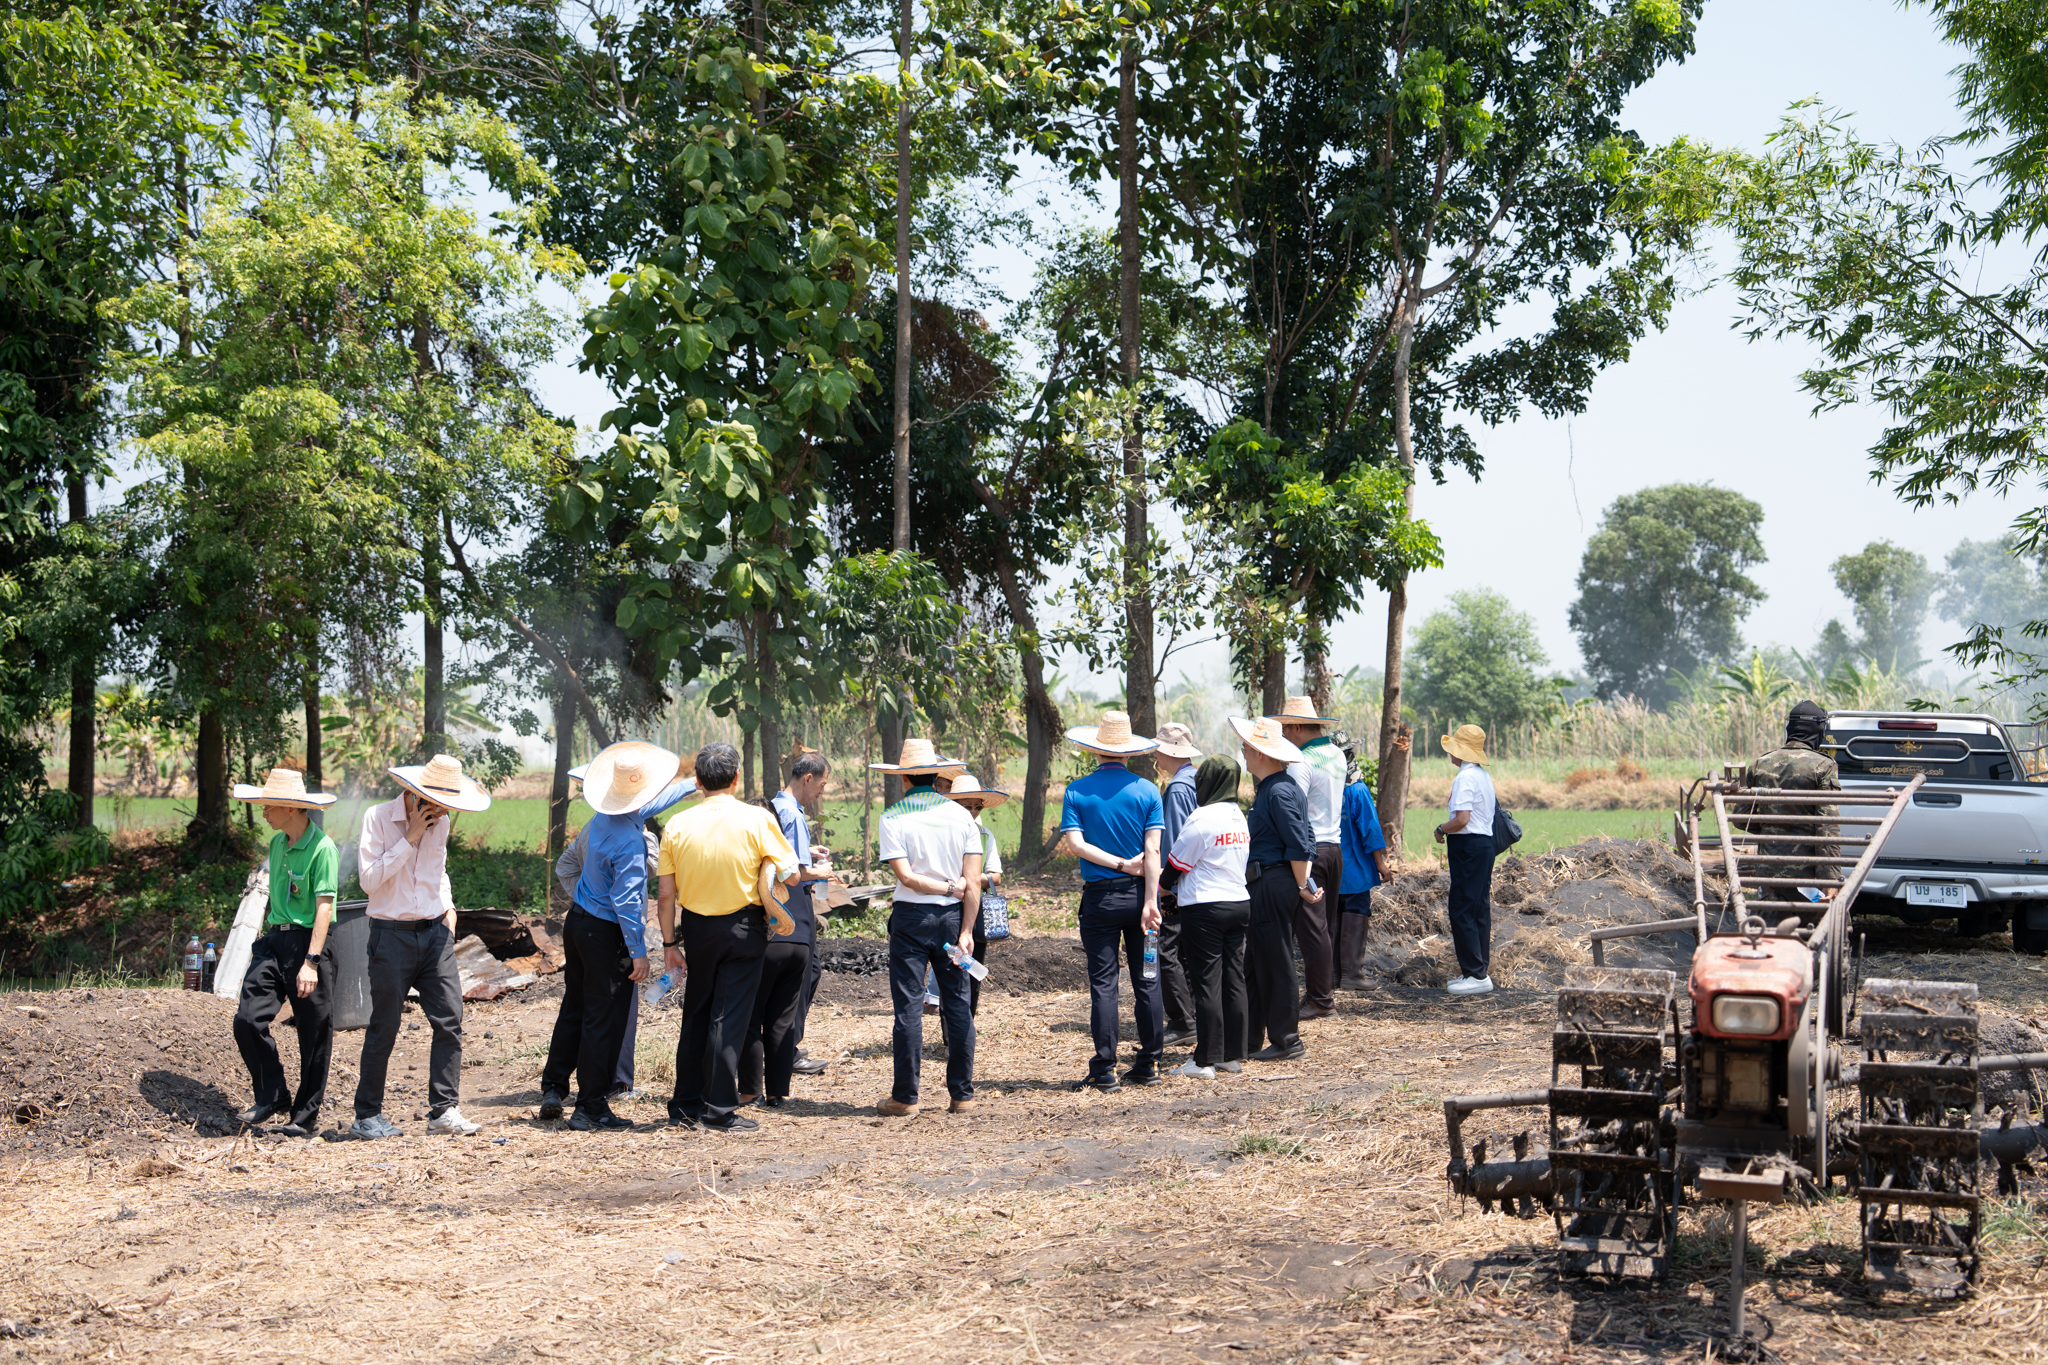 กิจกรรมเยี่ยมชมศูนย์การเรียนรู้ฟาร์มสร้างสุขรามาธิบดี (The Ramathibodi Healthy Farm Learning Center)